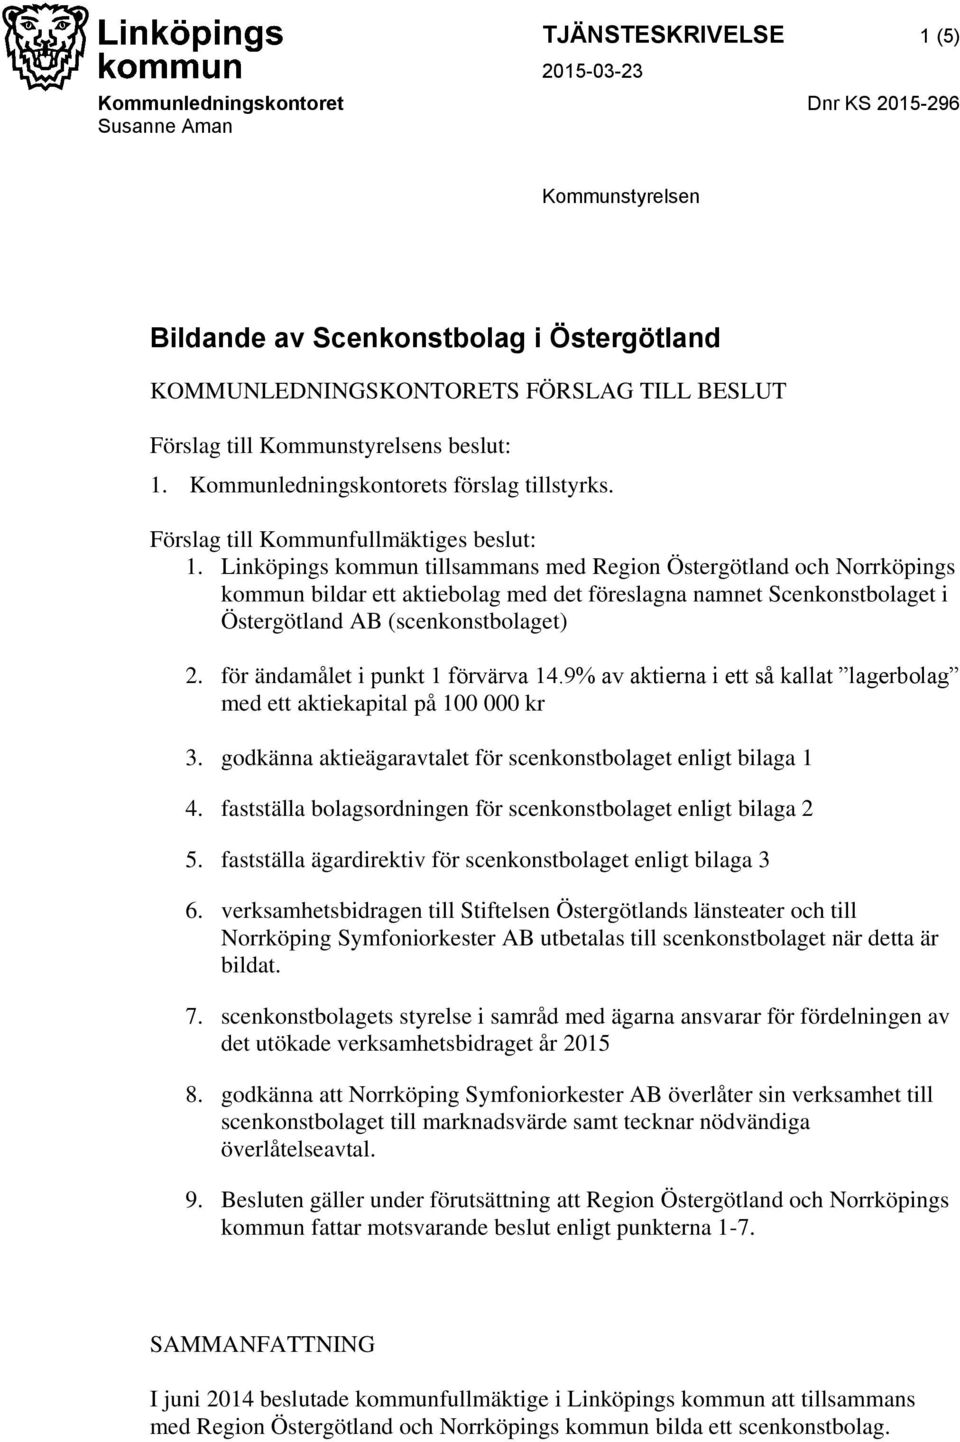 Linköpings kommun tillsammans med Region Östergötland och Norrköpings kommun bildar ett aktiebolag med det föreslagna namnet Scenkonstbolaget i Östergötland AB (scenkonstbolaget) 2.